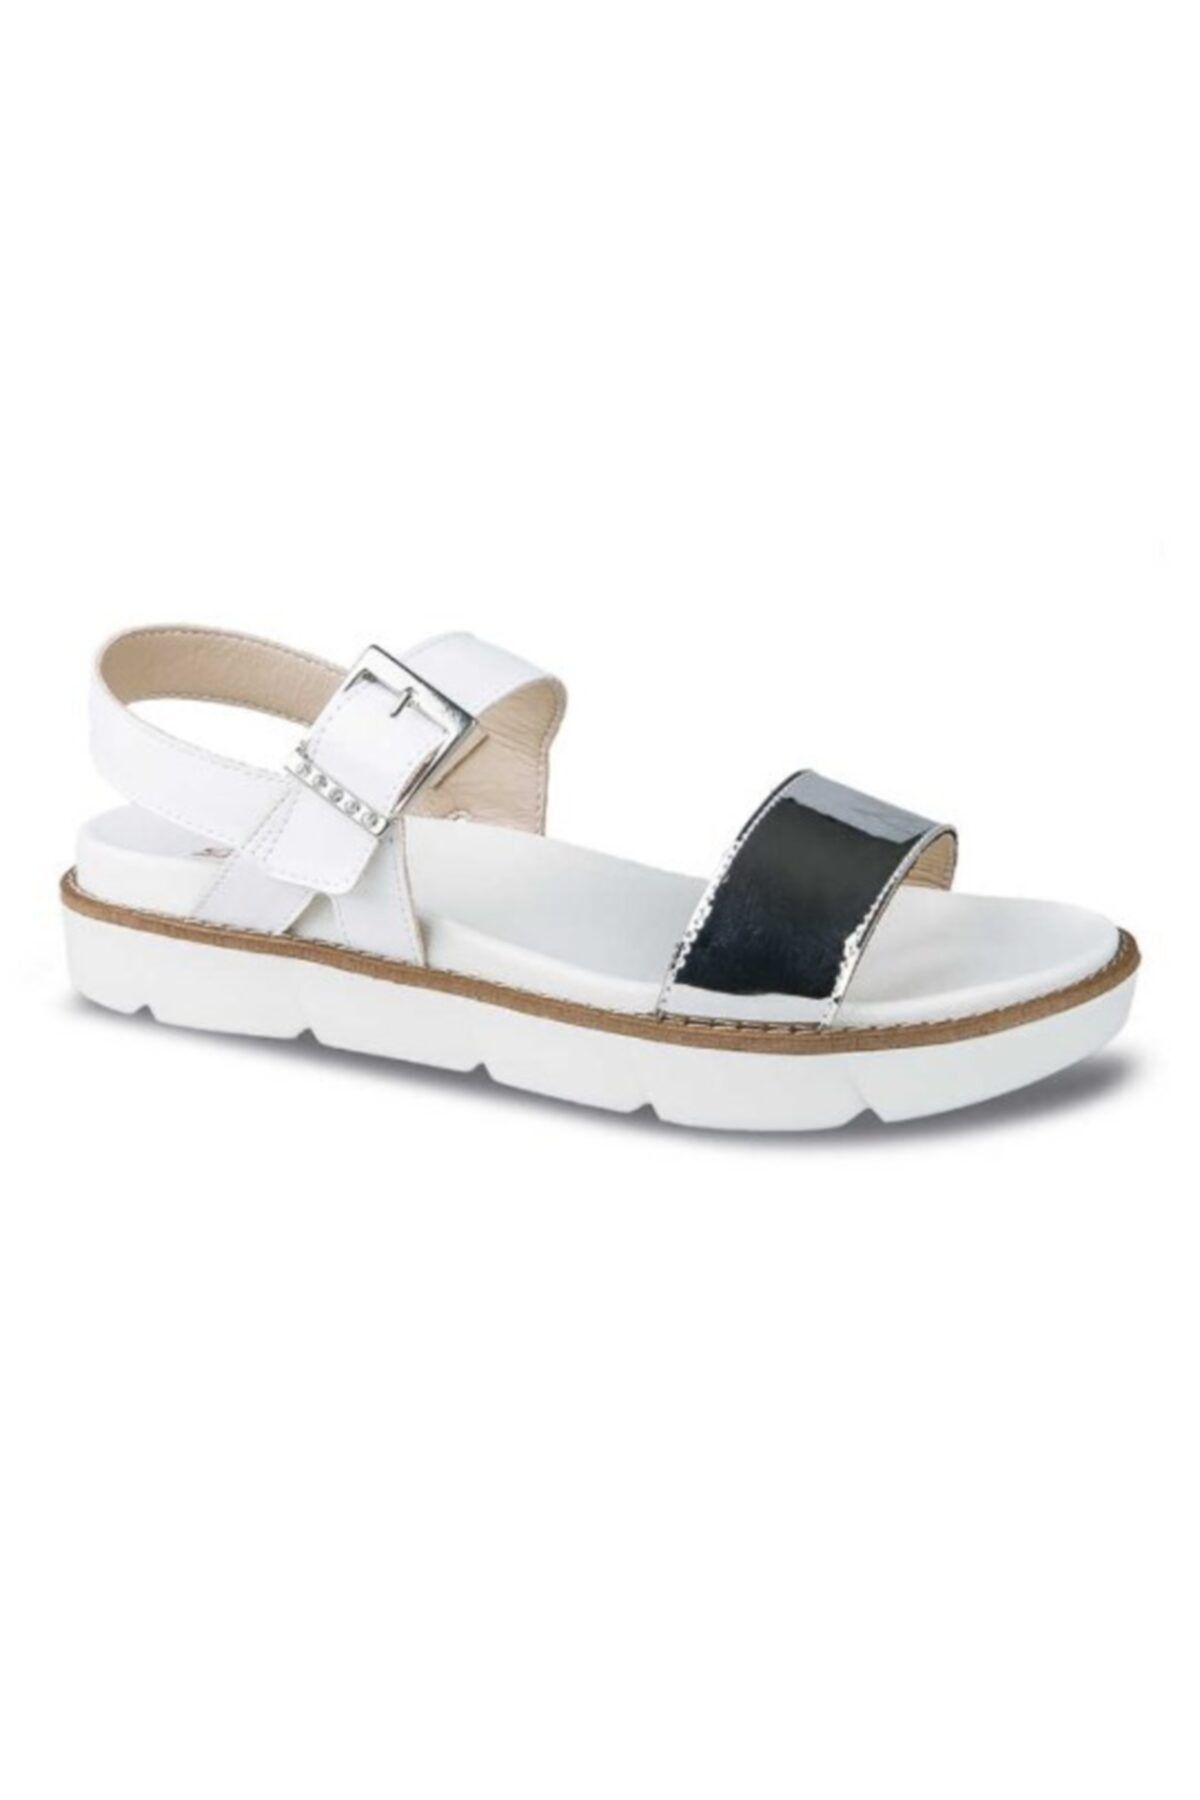 Ceyo Kadın Gümüş Renk Düz Taban Sandalet 9966